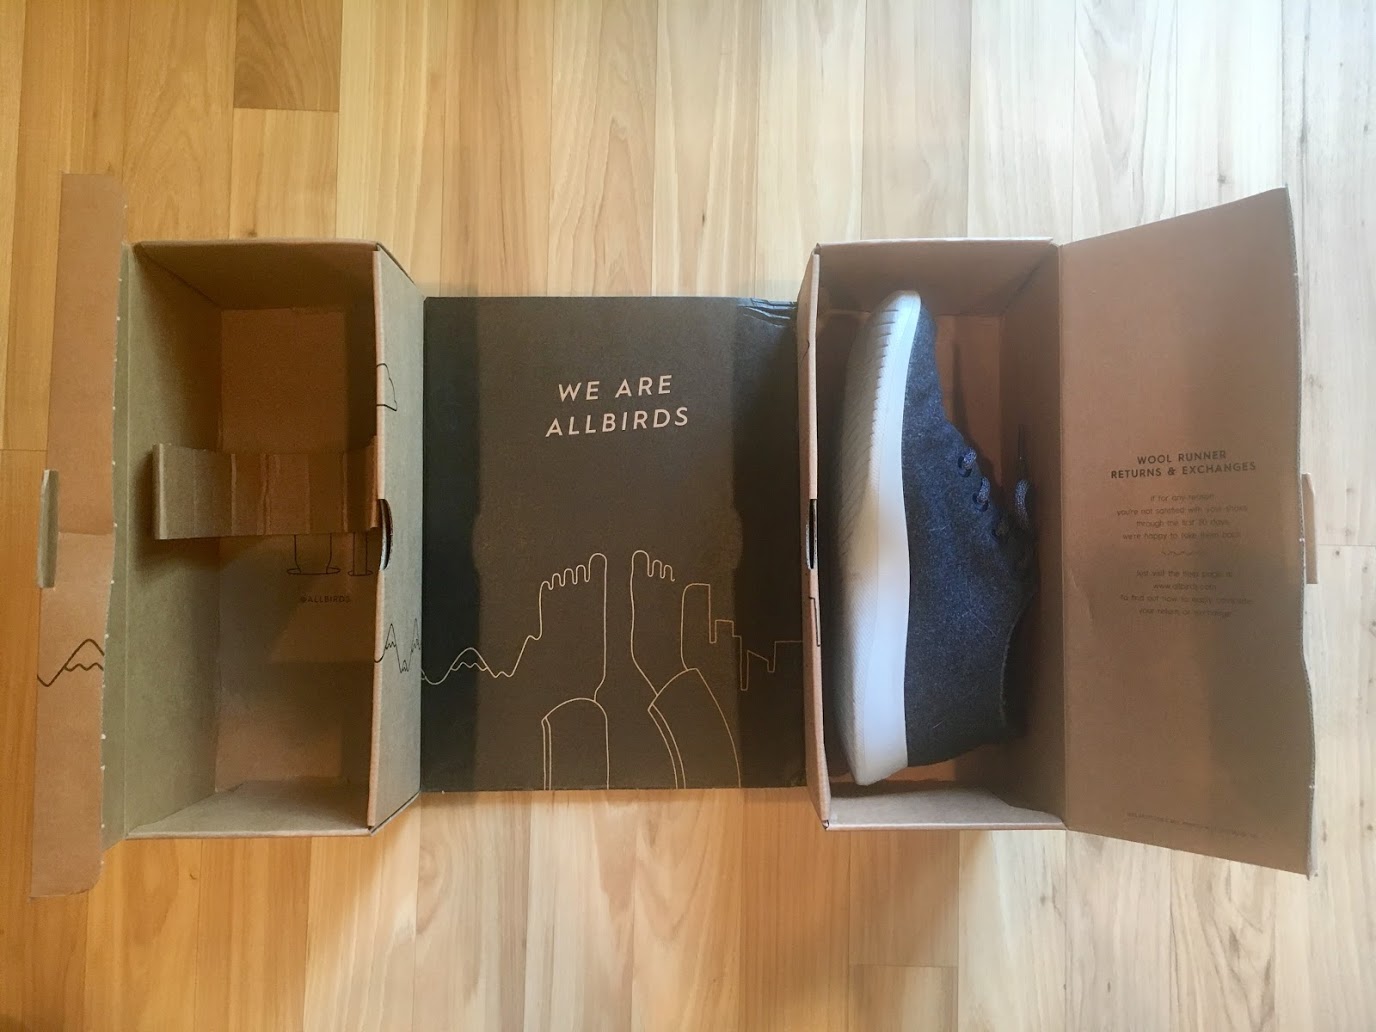 a shoe in a box